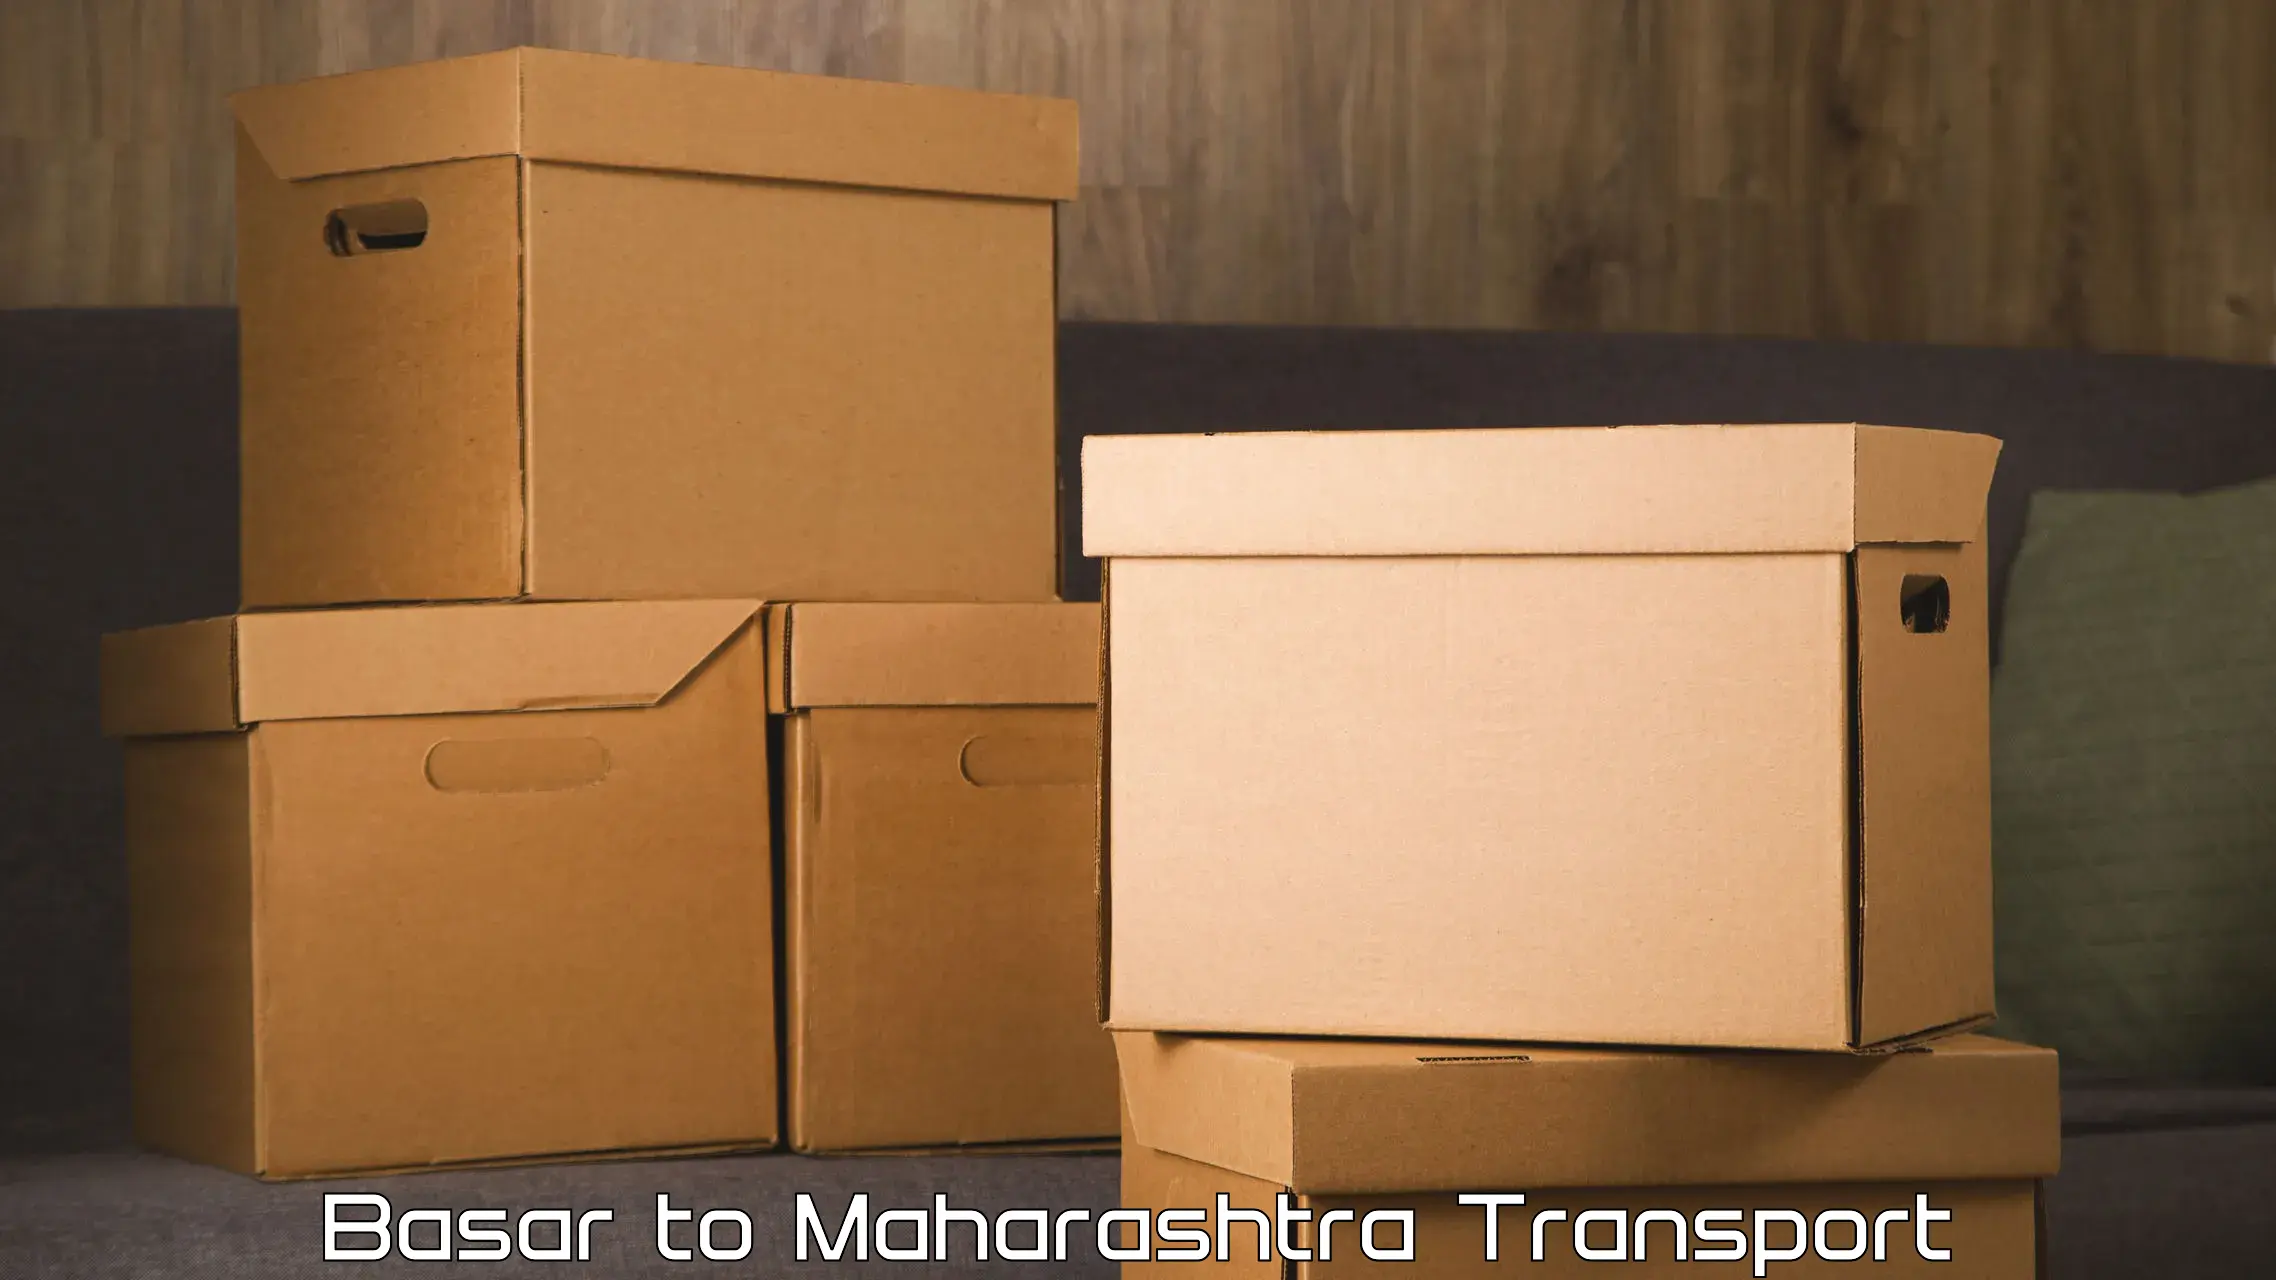 Container transport service Basar to IIT Mumbai